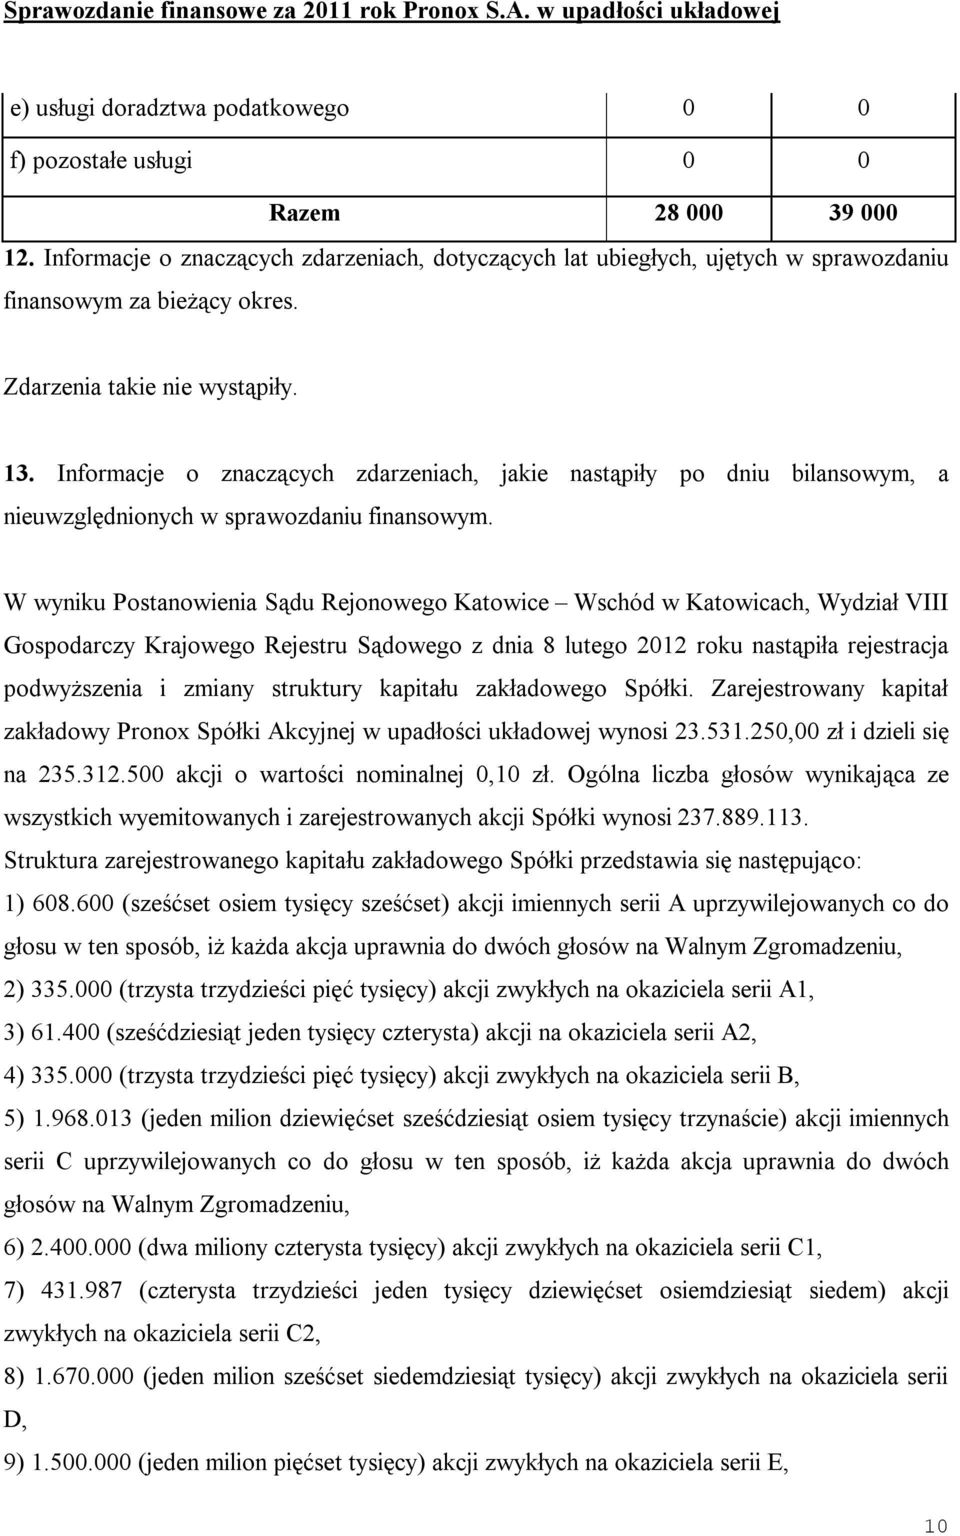 W wyniku Postanowienia Sądu Rejonowego Katowice Wschód w Katowicach, Wydział VIII Gospodarczy Krajowego Rejestru Sądowego z dnia 8 lutego 2012 roku nastąpiła rejestracja podwyższenia i zmiany